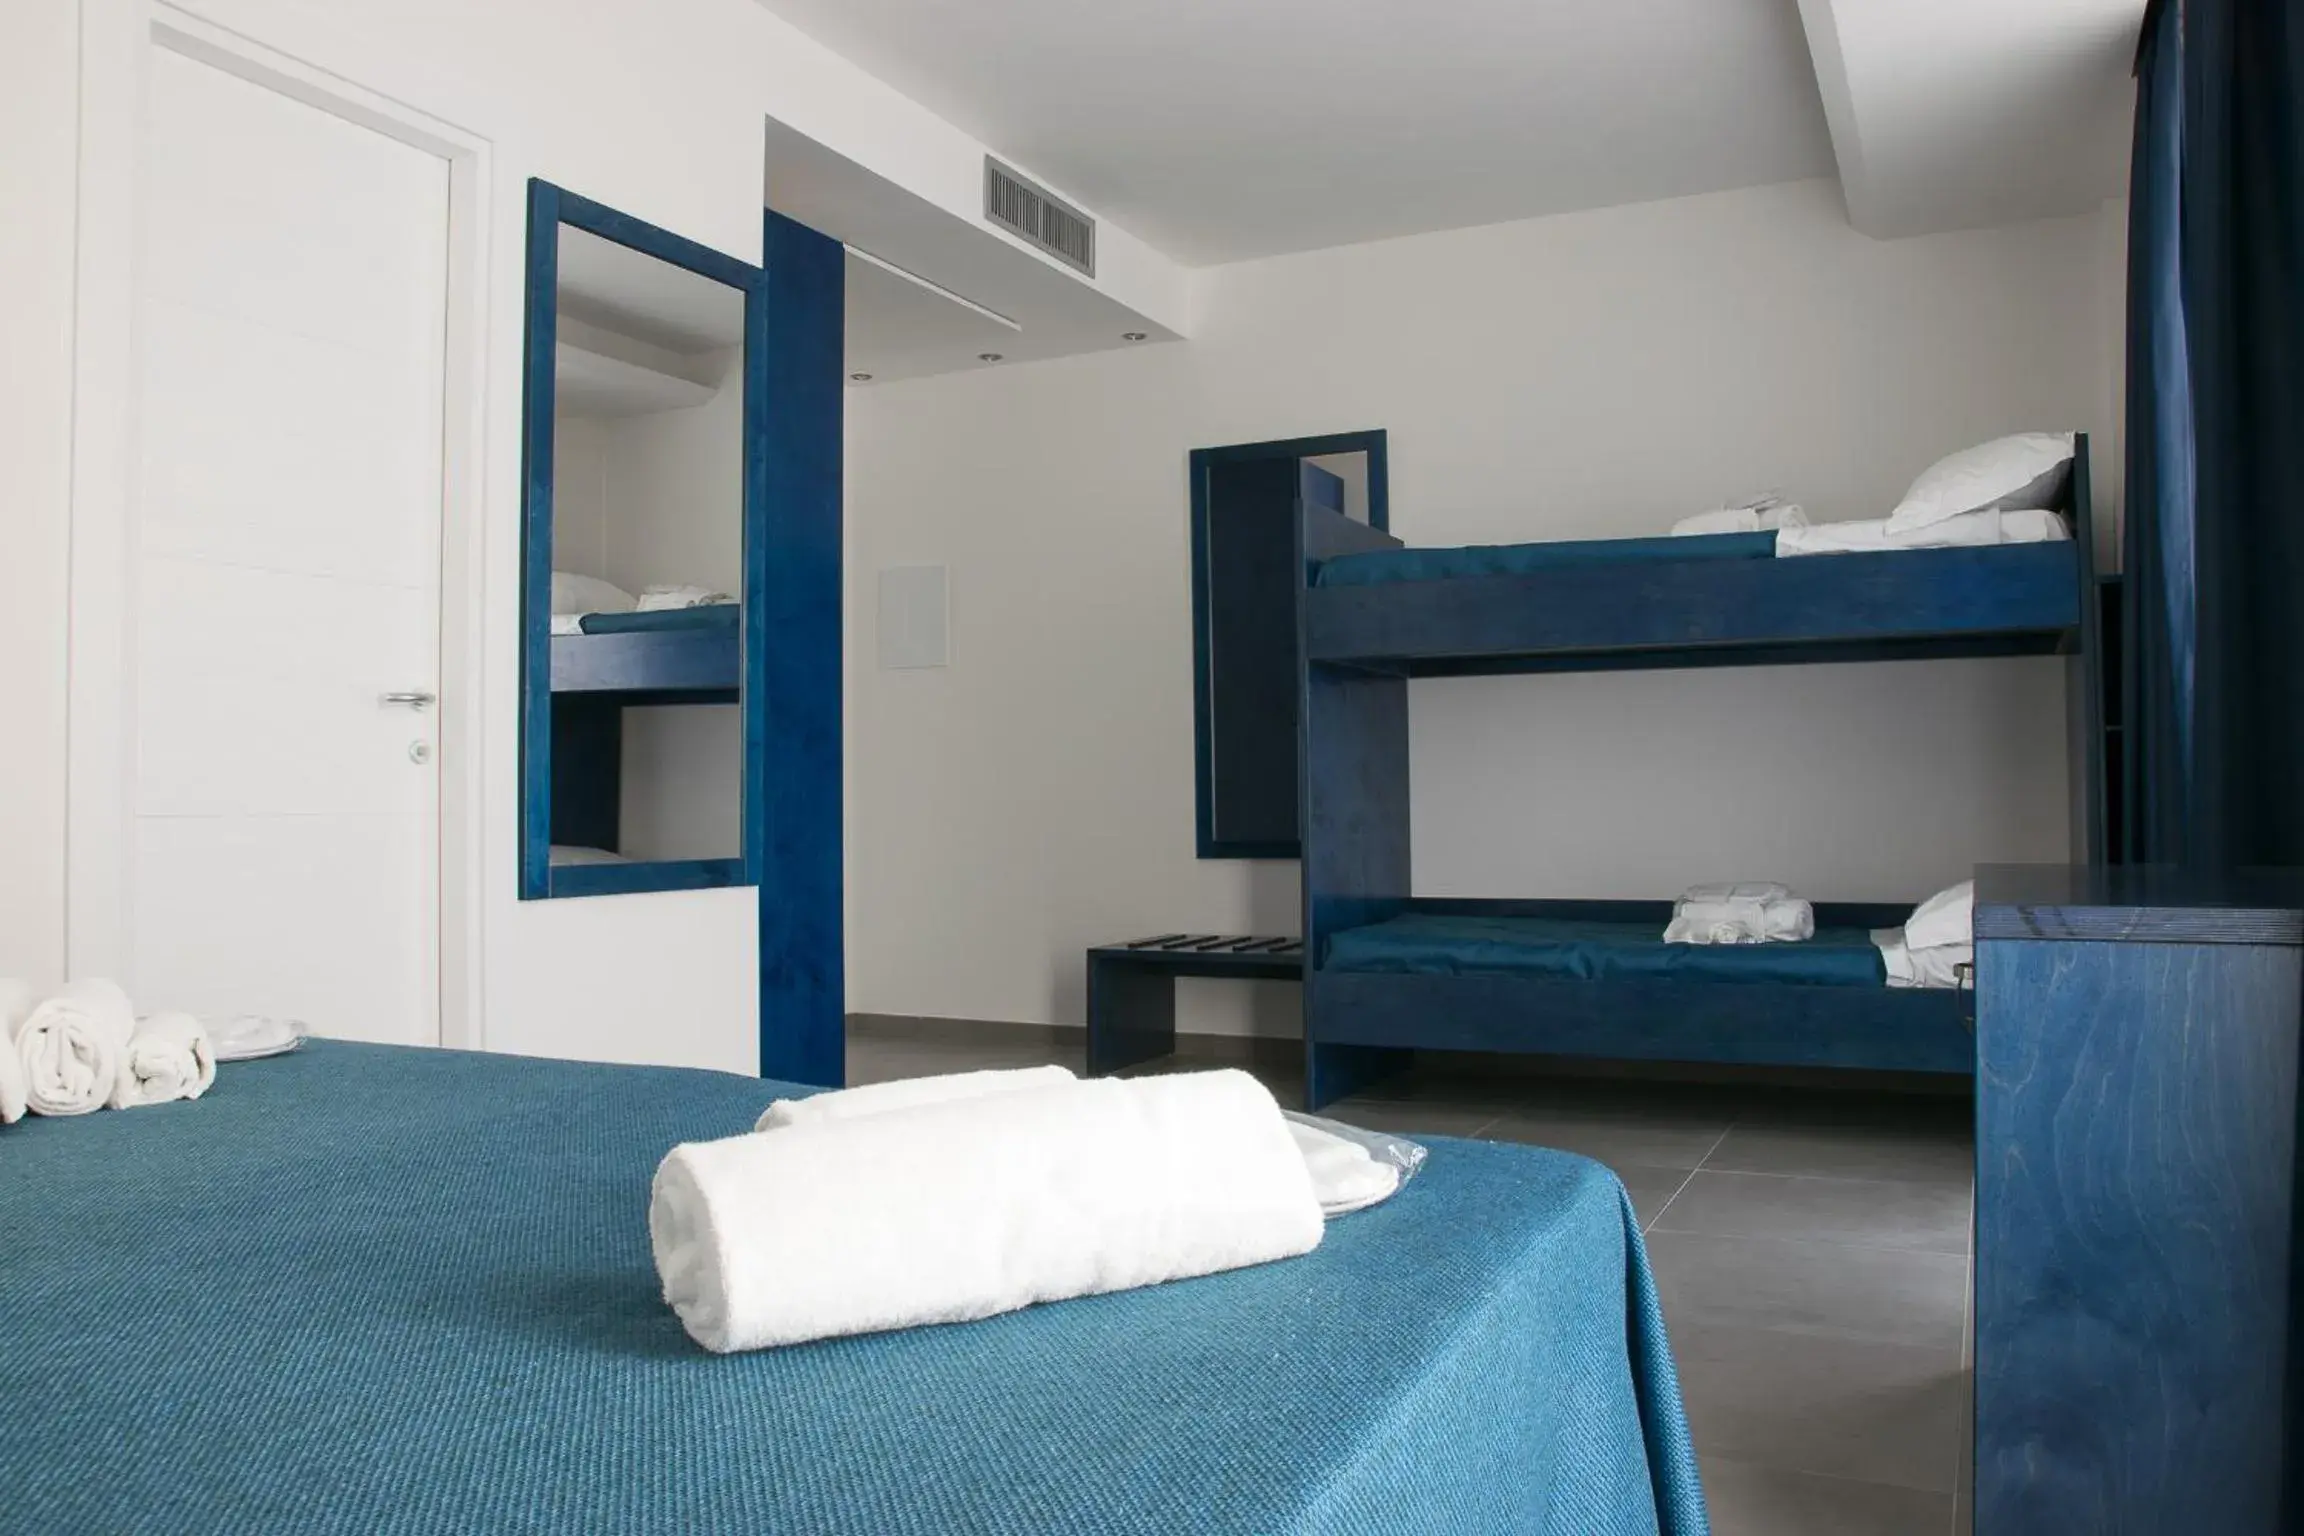 Bedroom, Room Photo in Hotel Belvedere